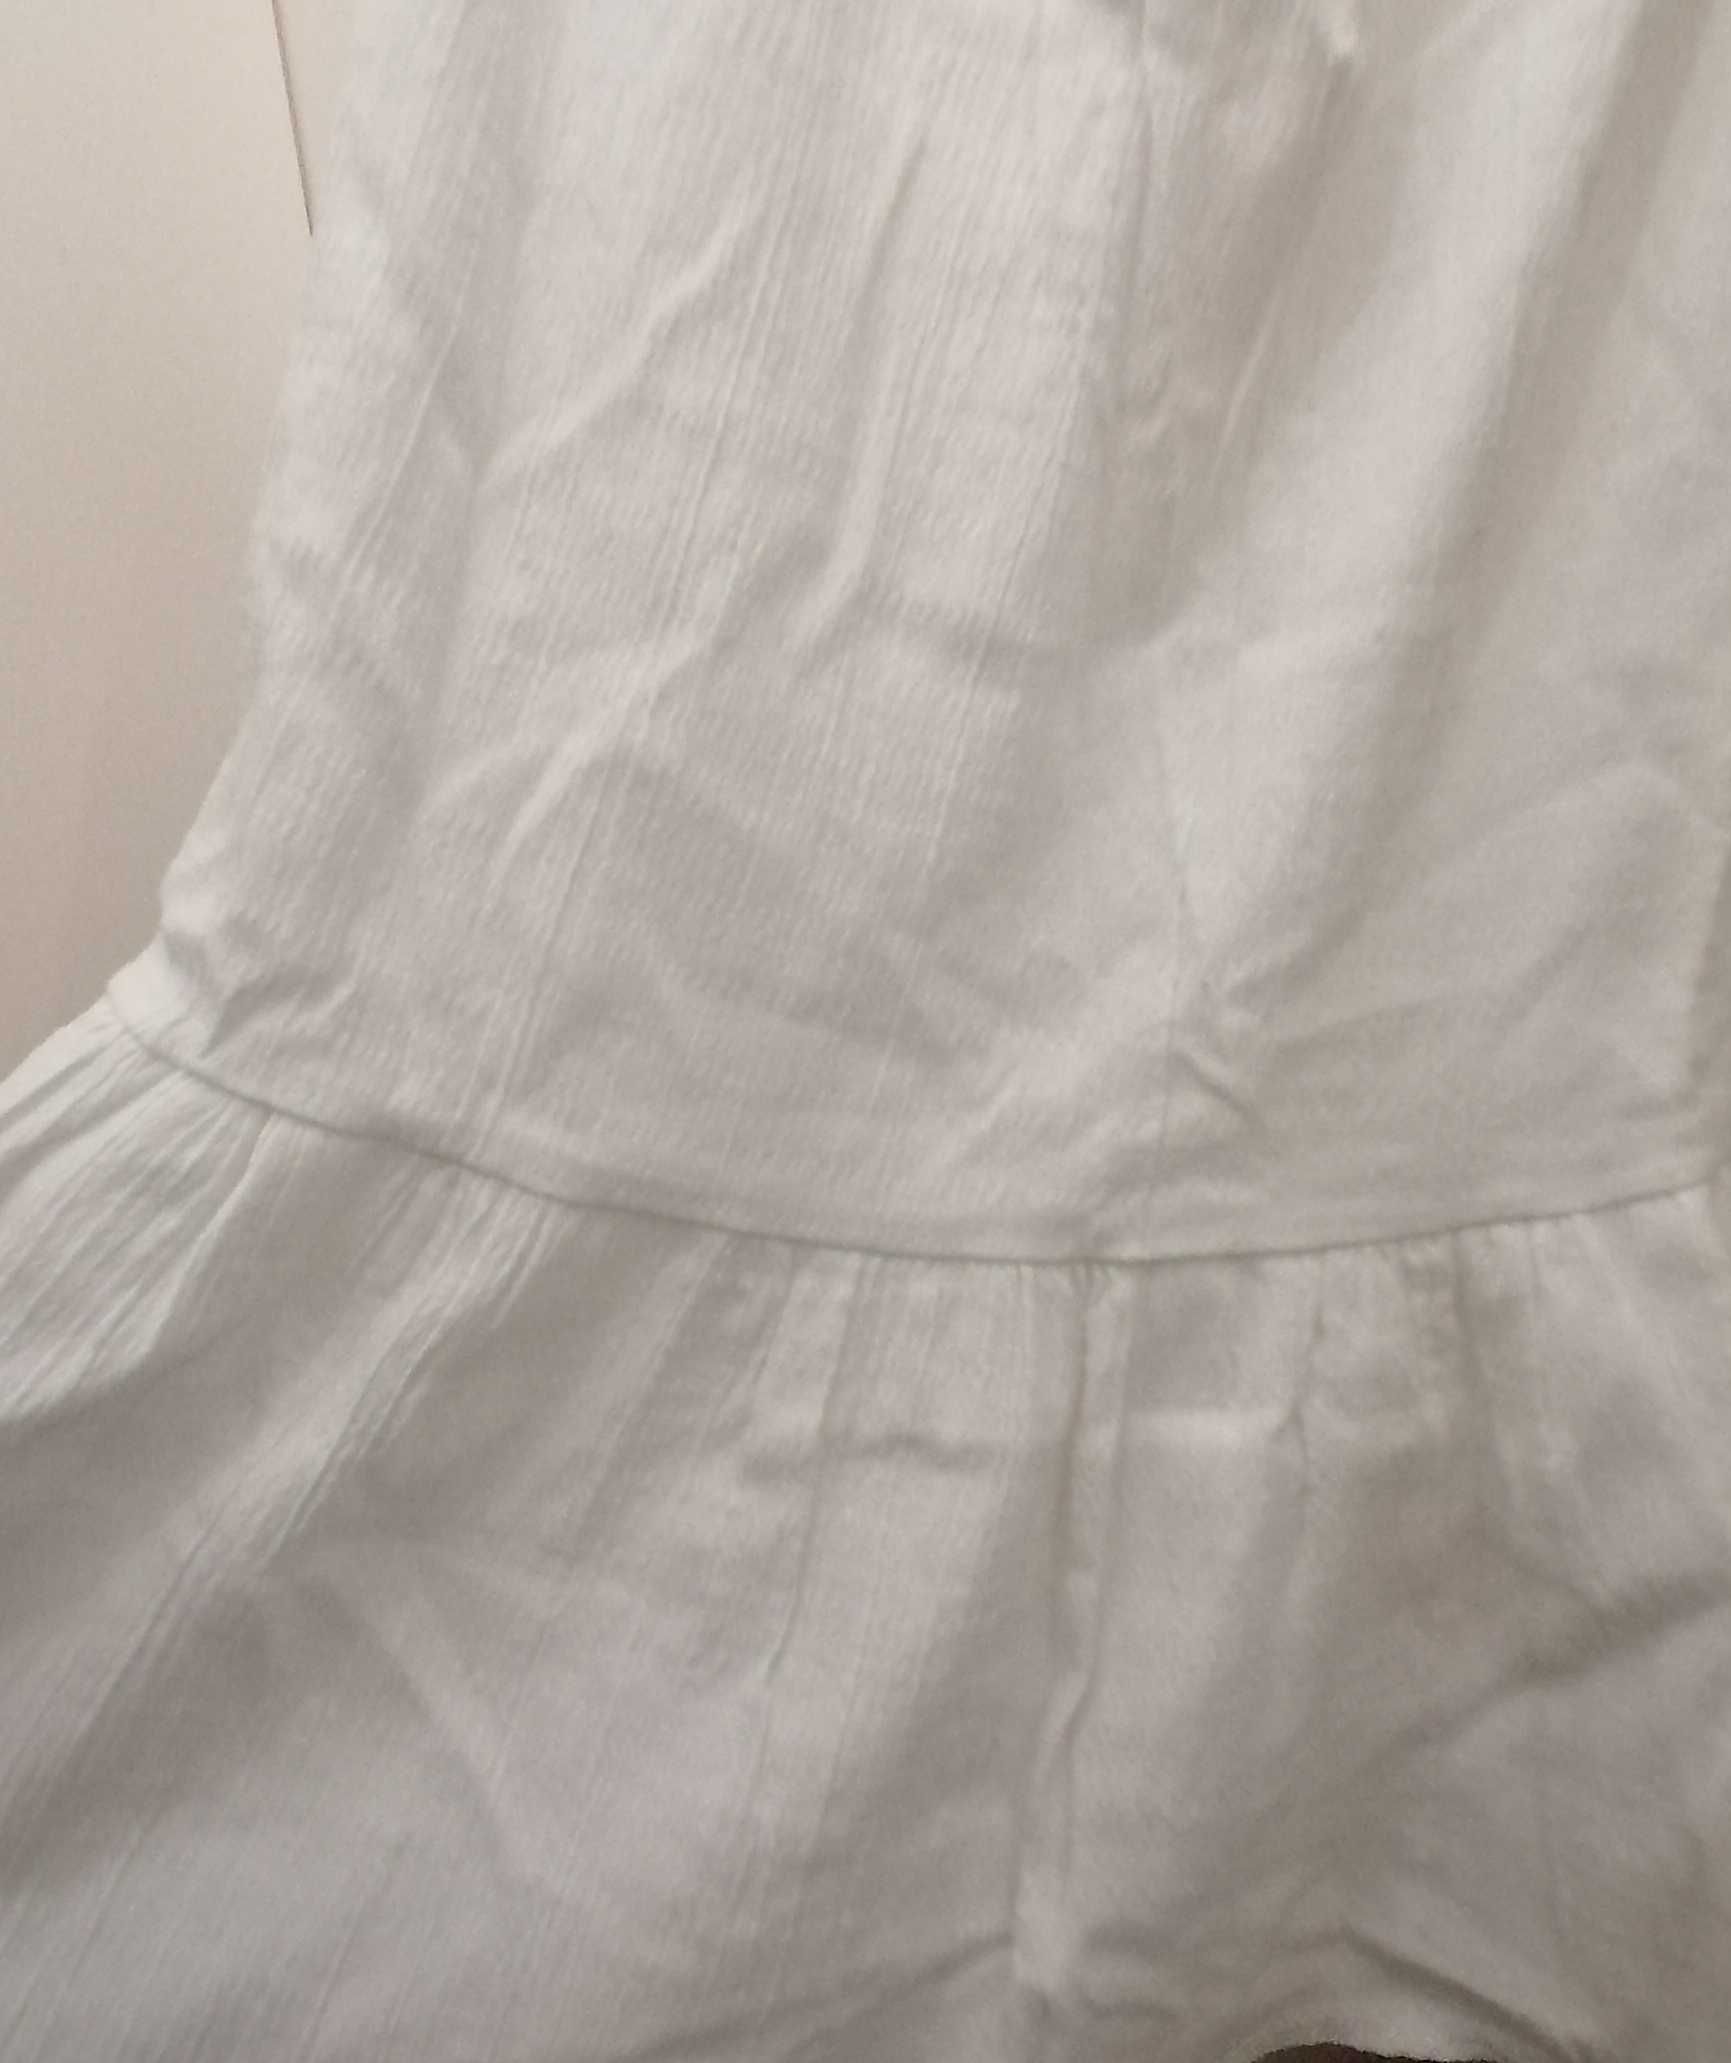 Długa spódnica z gęstej bawełny z falbaną XS/S